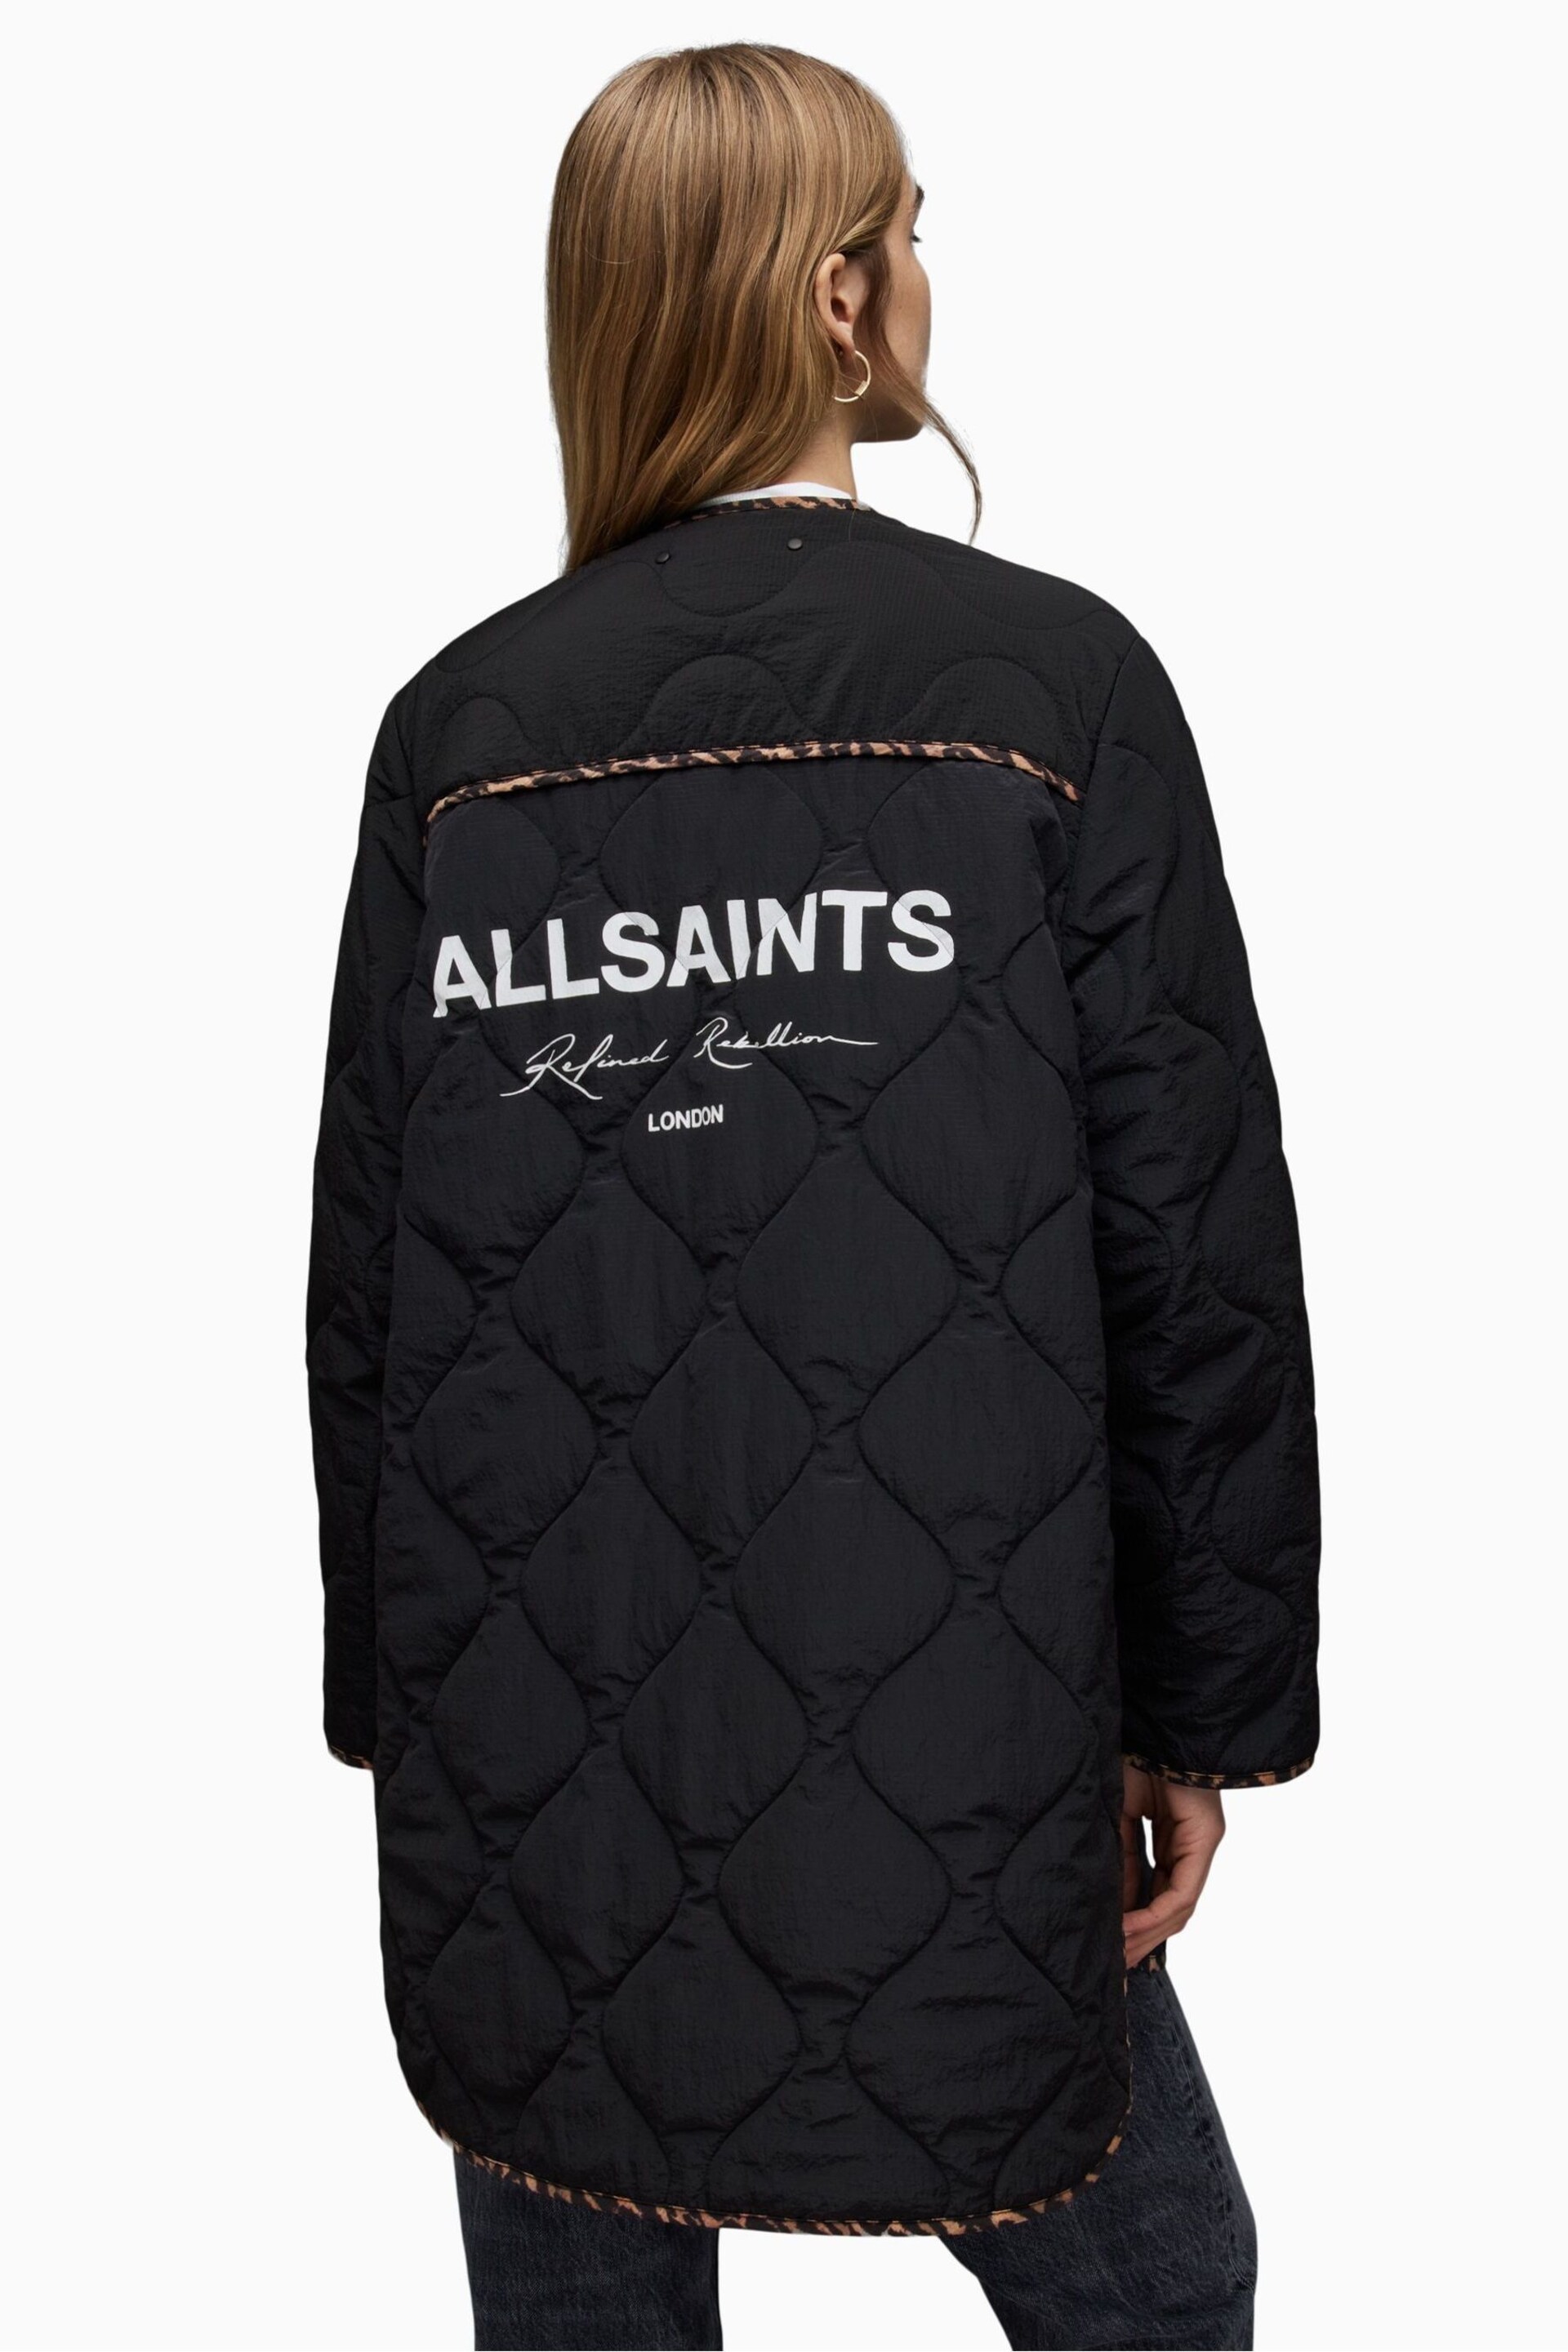 AllSaints Black Phyllis Leppo Liner Jacket - Image 2 of 7